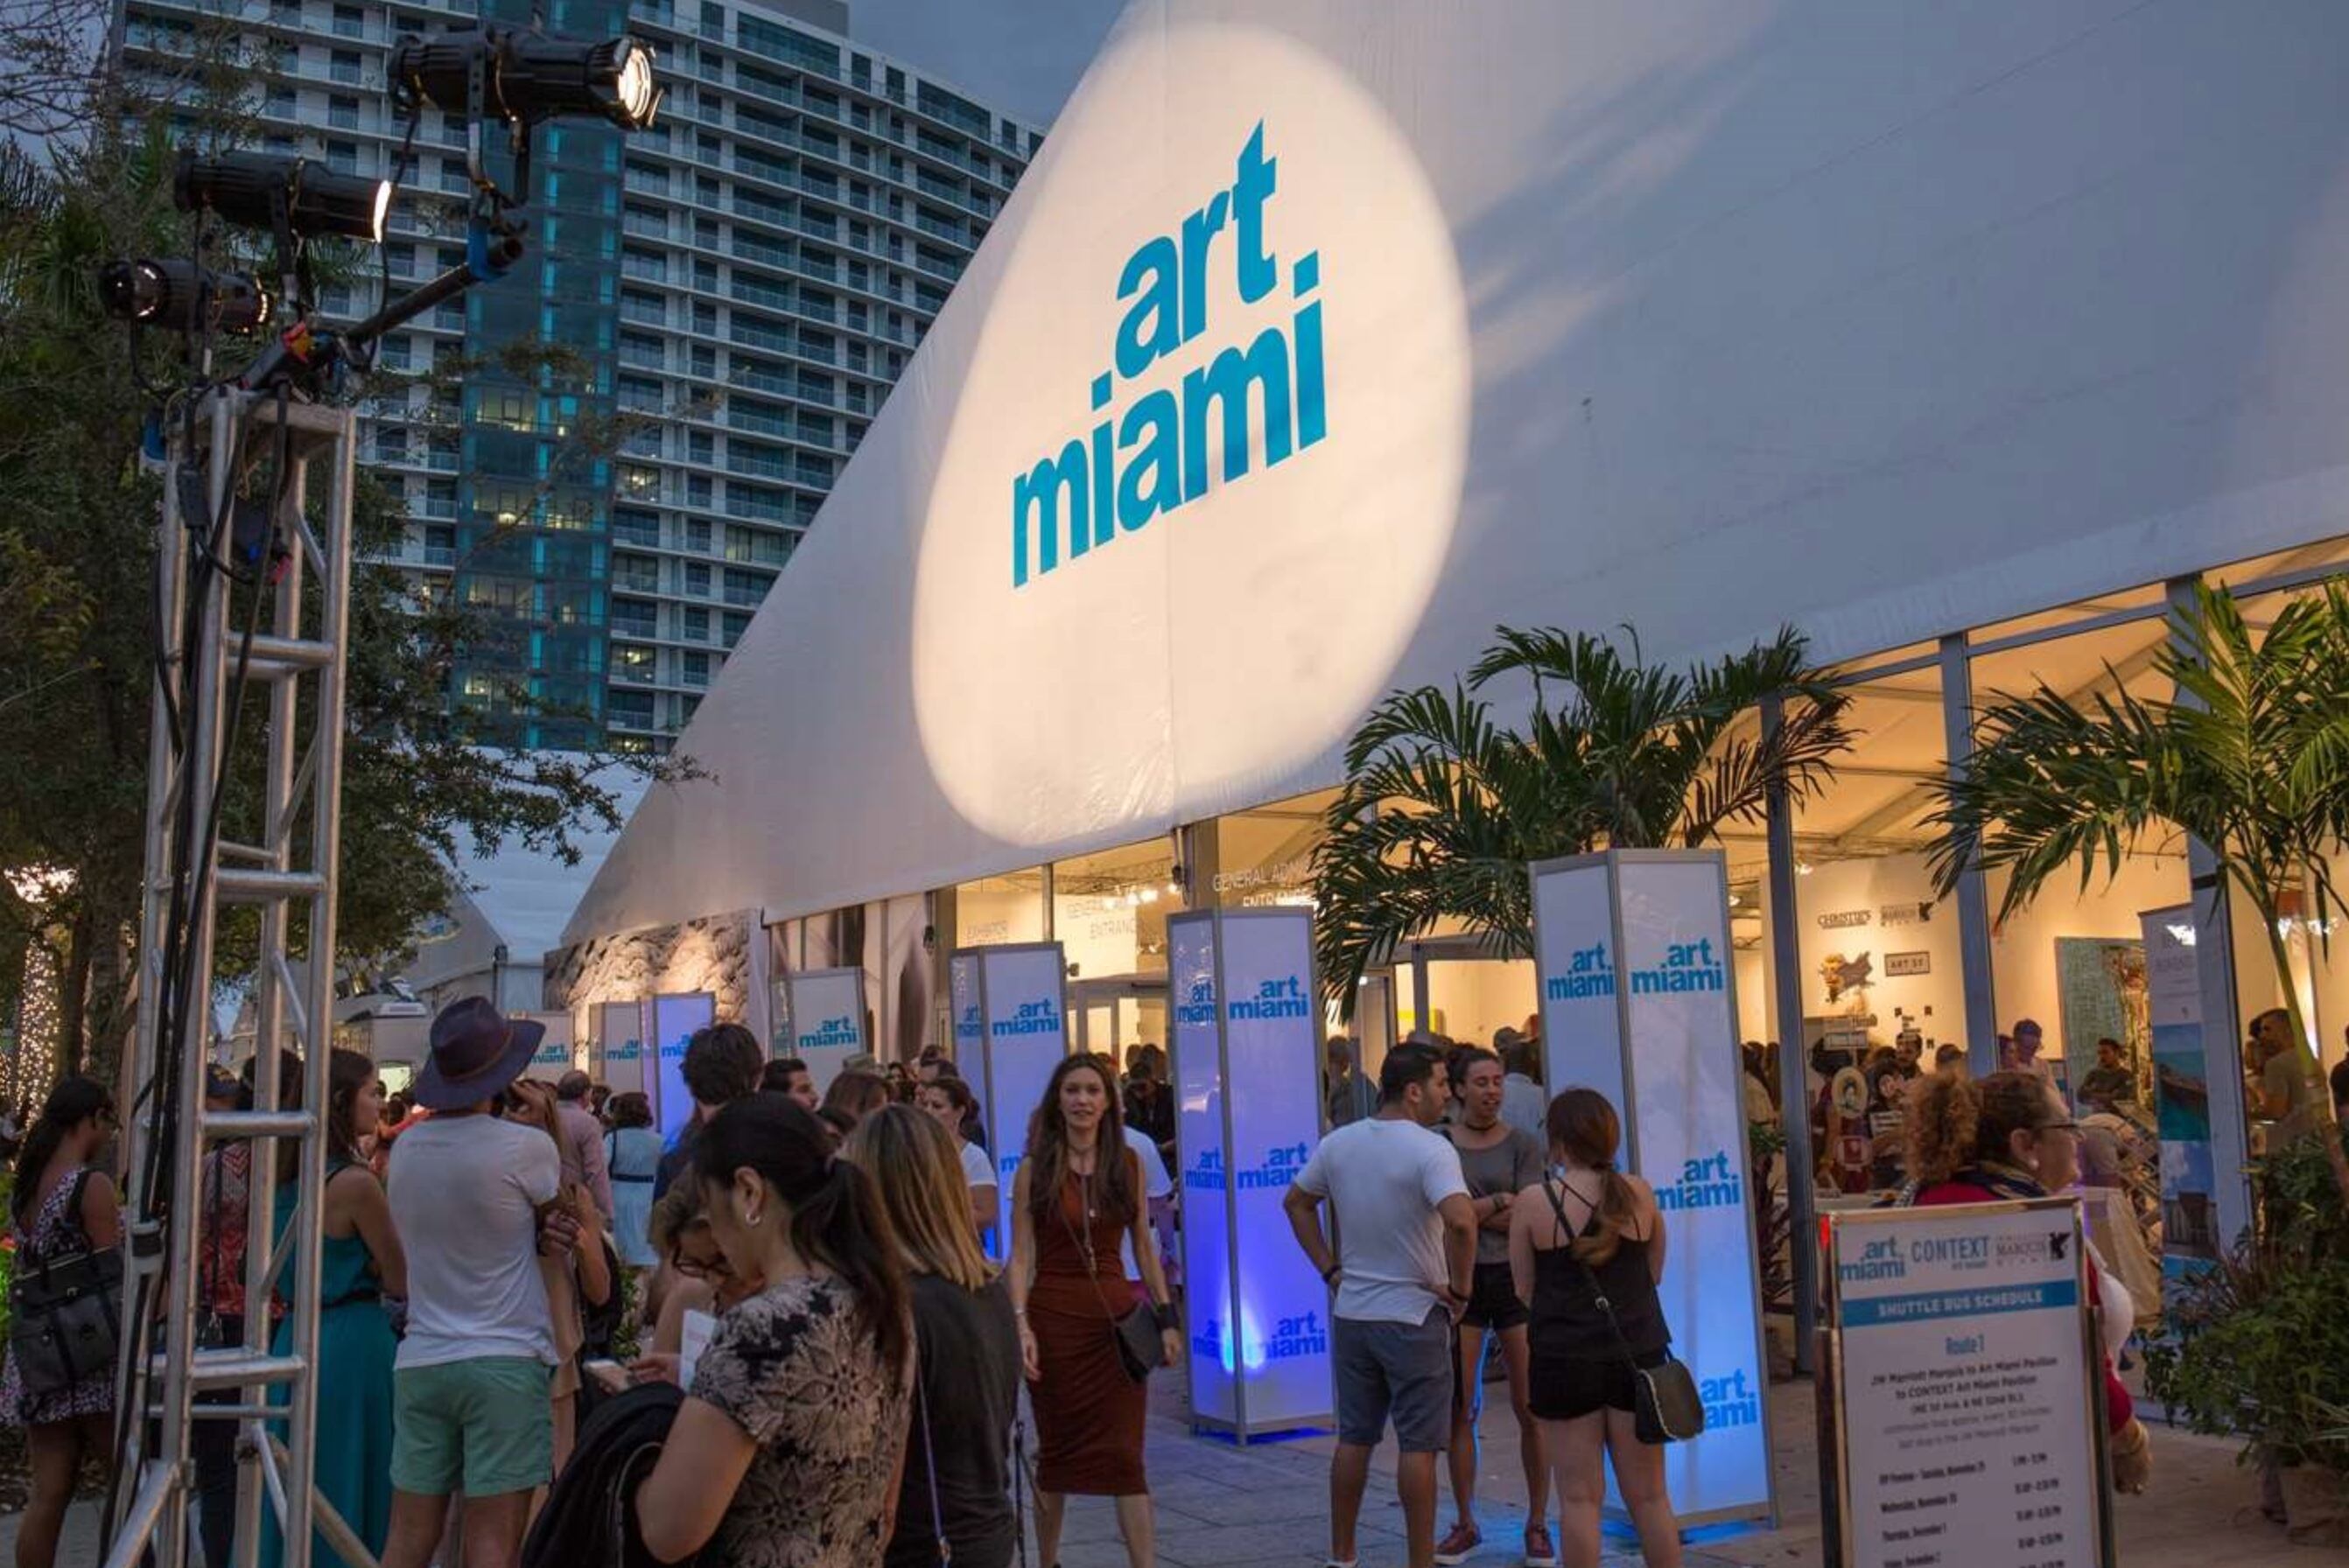 Además de la nave madre, hay otras ferias valiosas para recorrer durante Miami Art Week, como Art Miami.